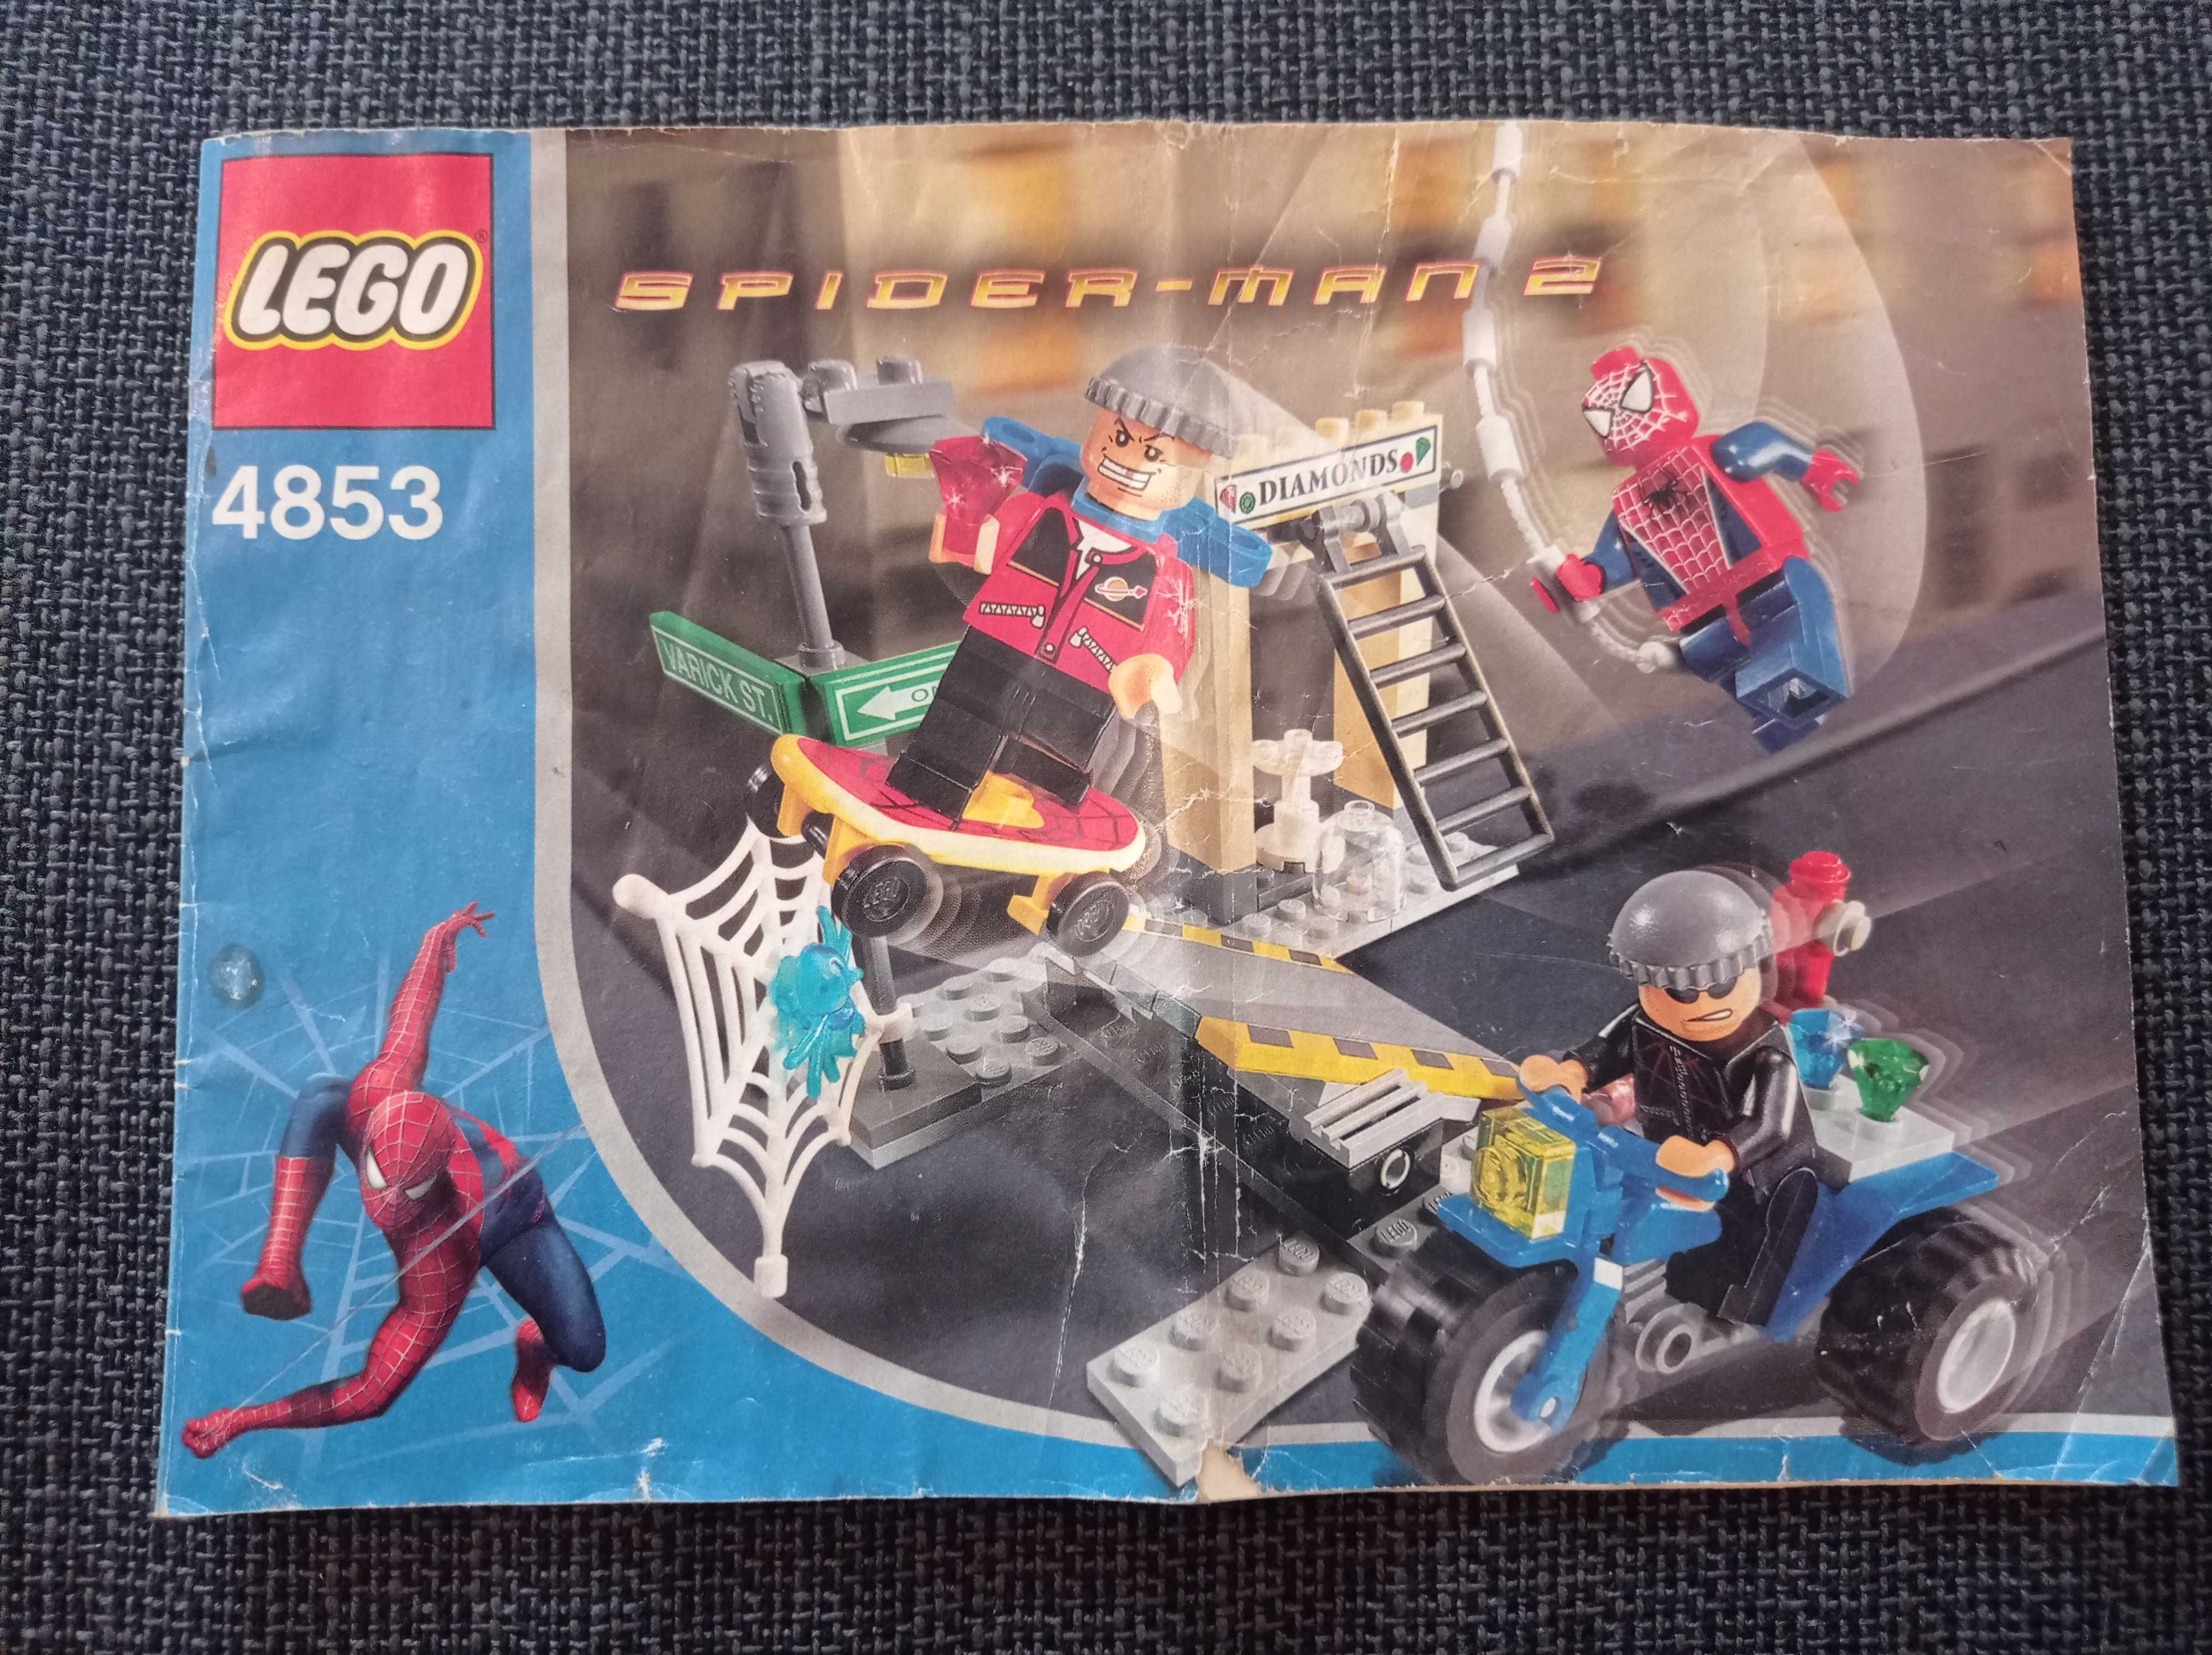 Lego 4853 instrukcja